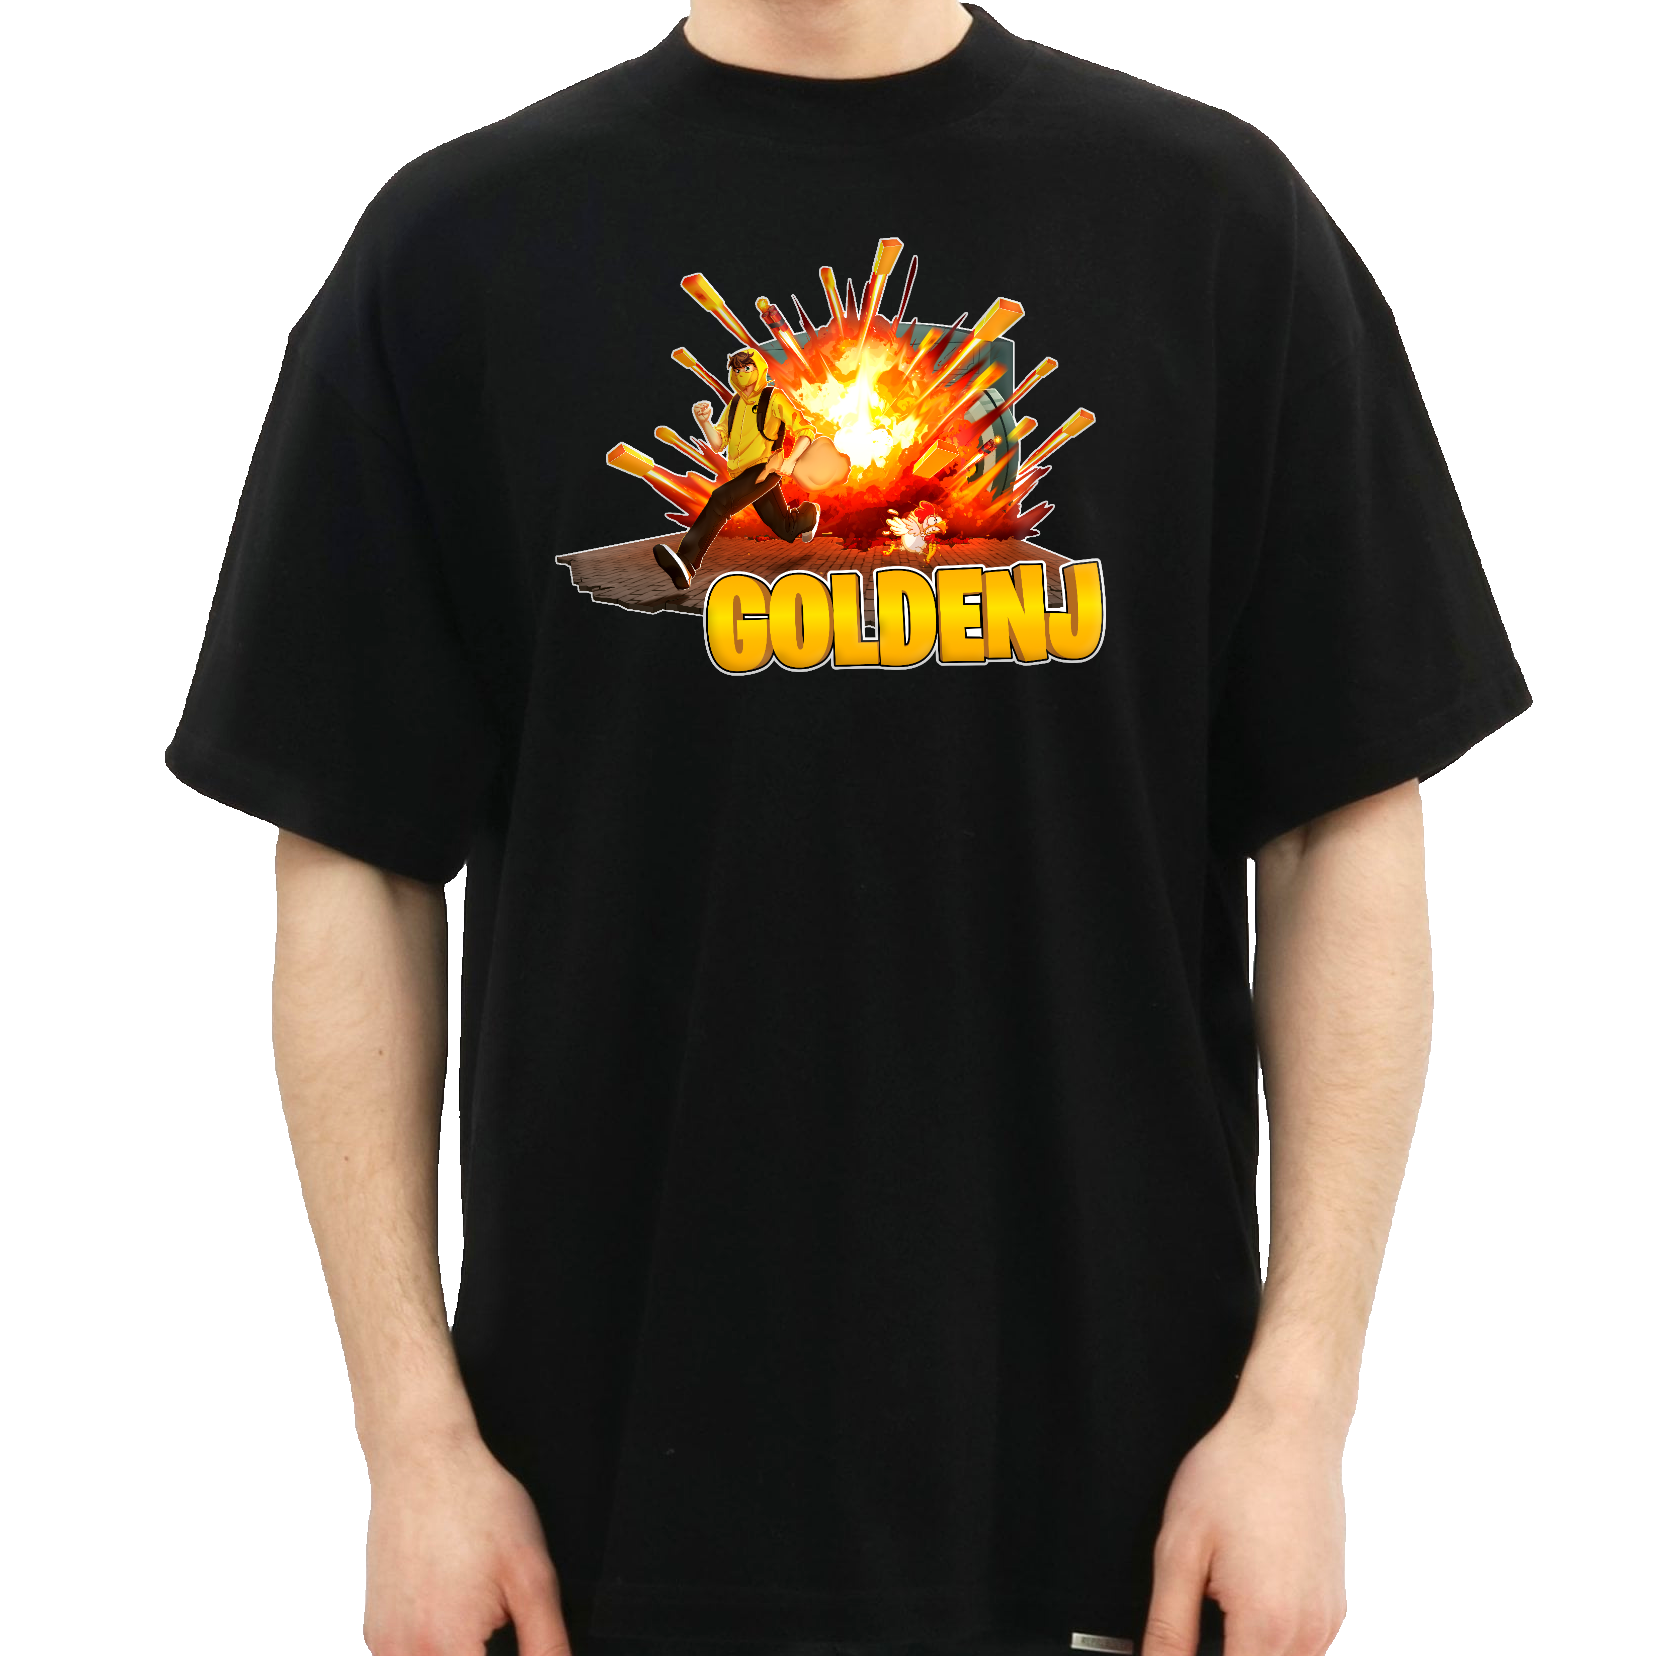 En mand iført en sort t-shirt, hvor man kan se fronten, som har et GoldenJ mønster med en mand i en gul hoodie, som løber væk fra en eksplosion